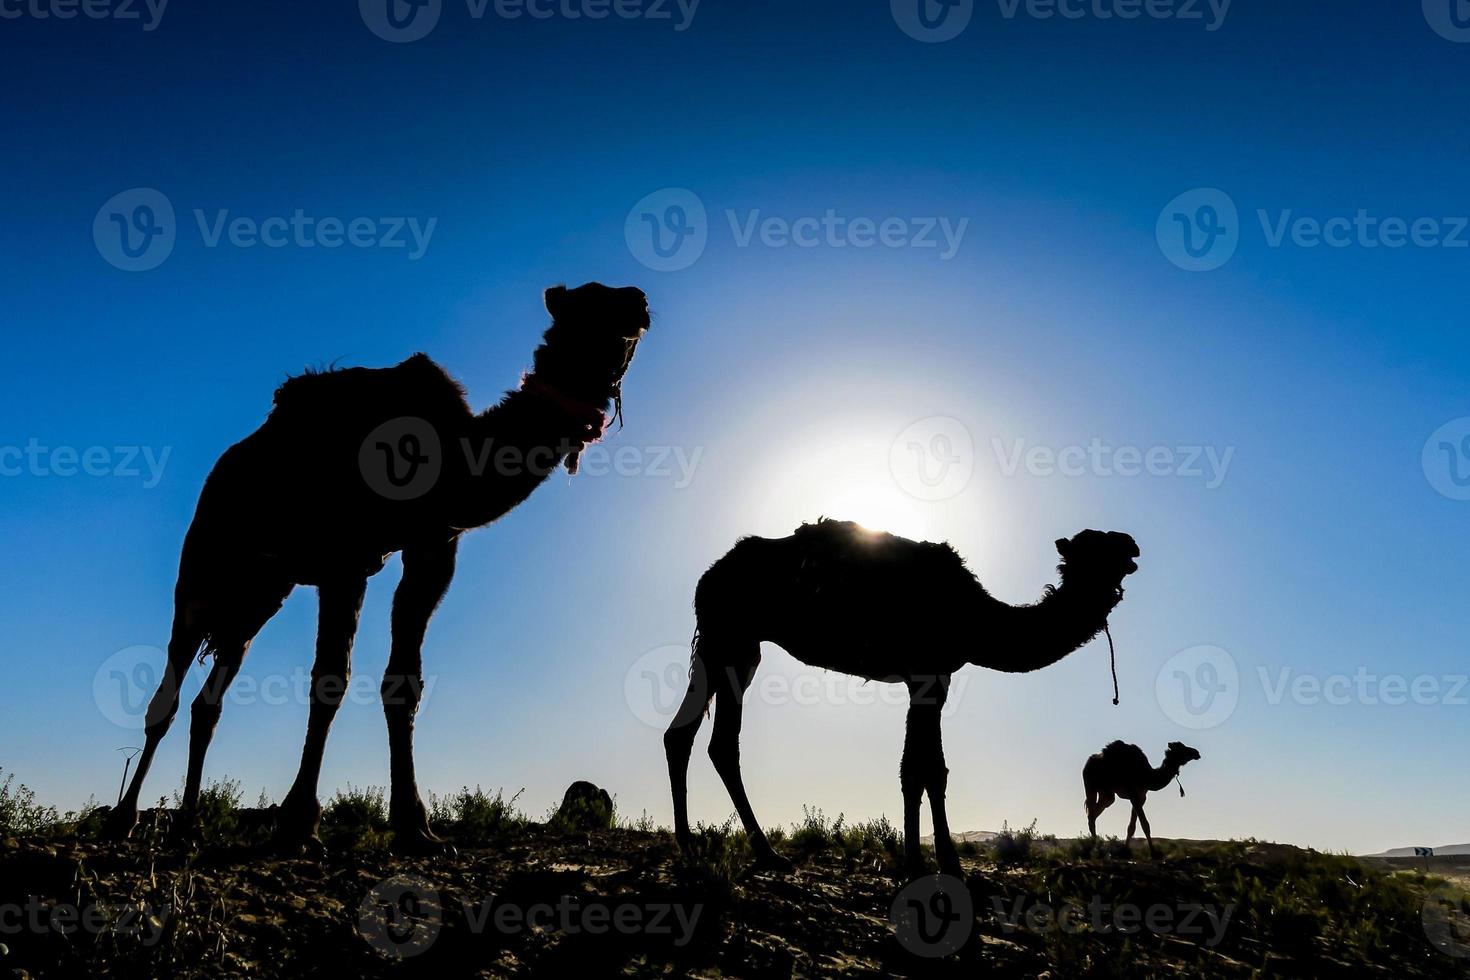 kamelen in marokko foto